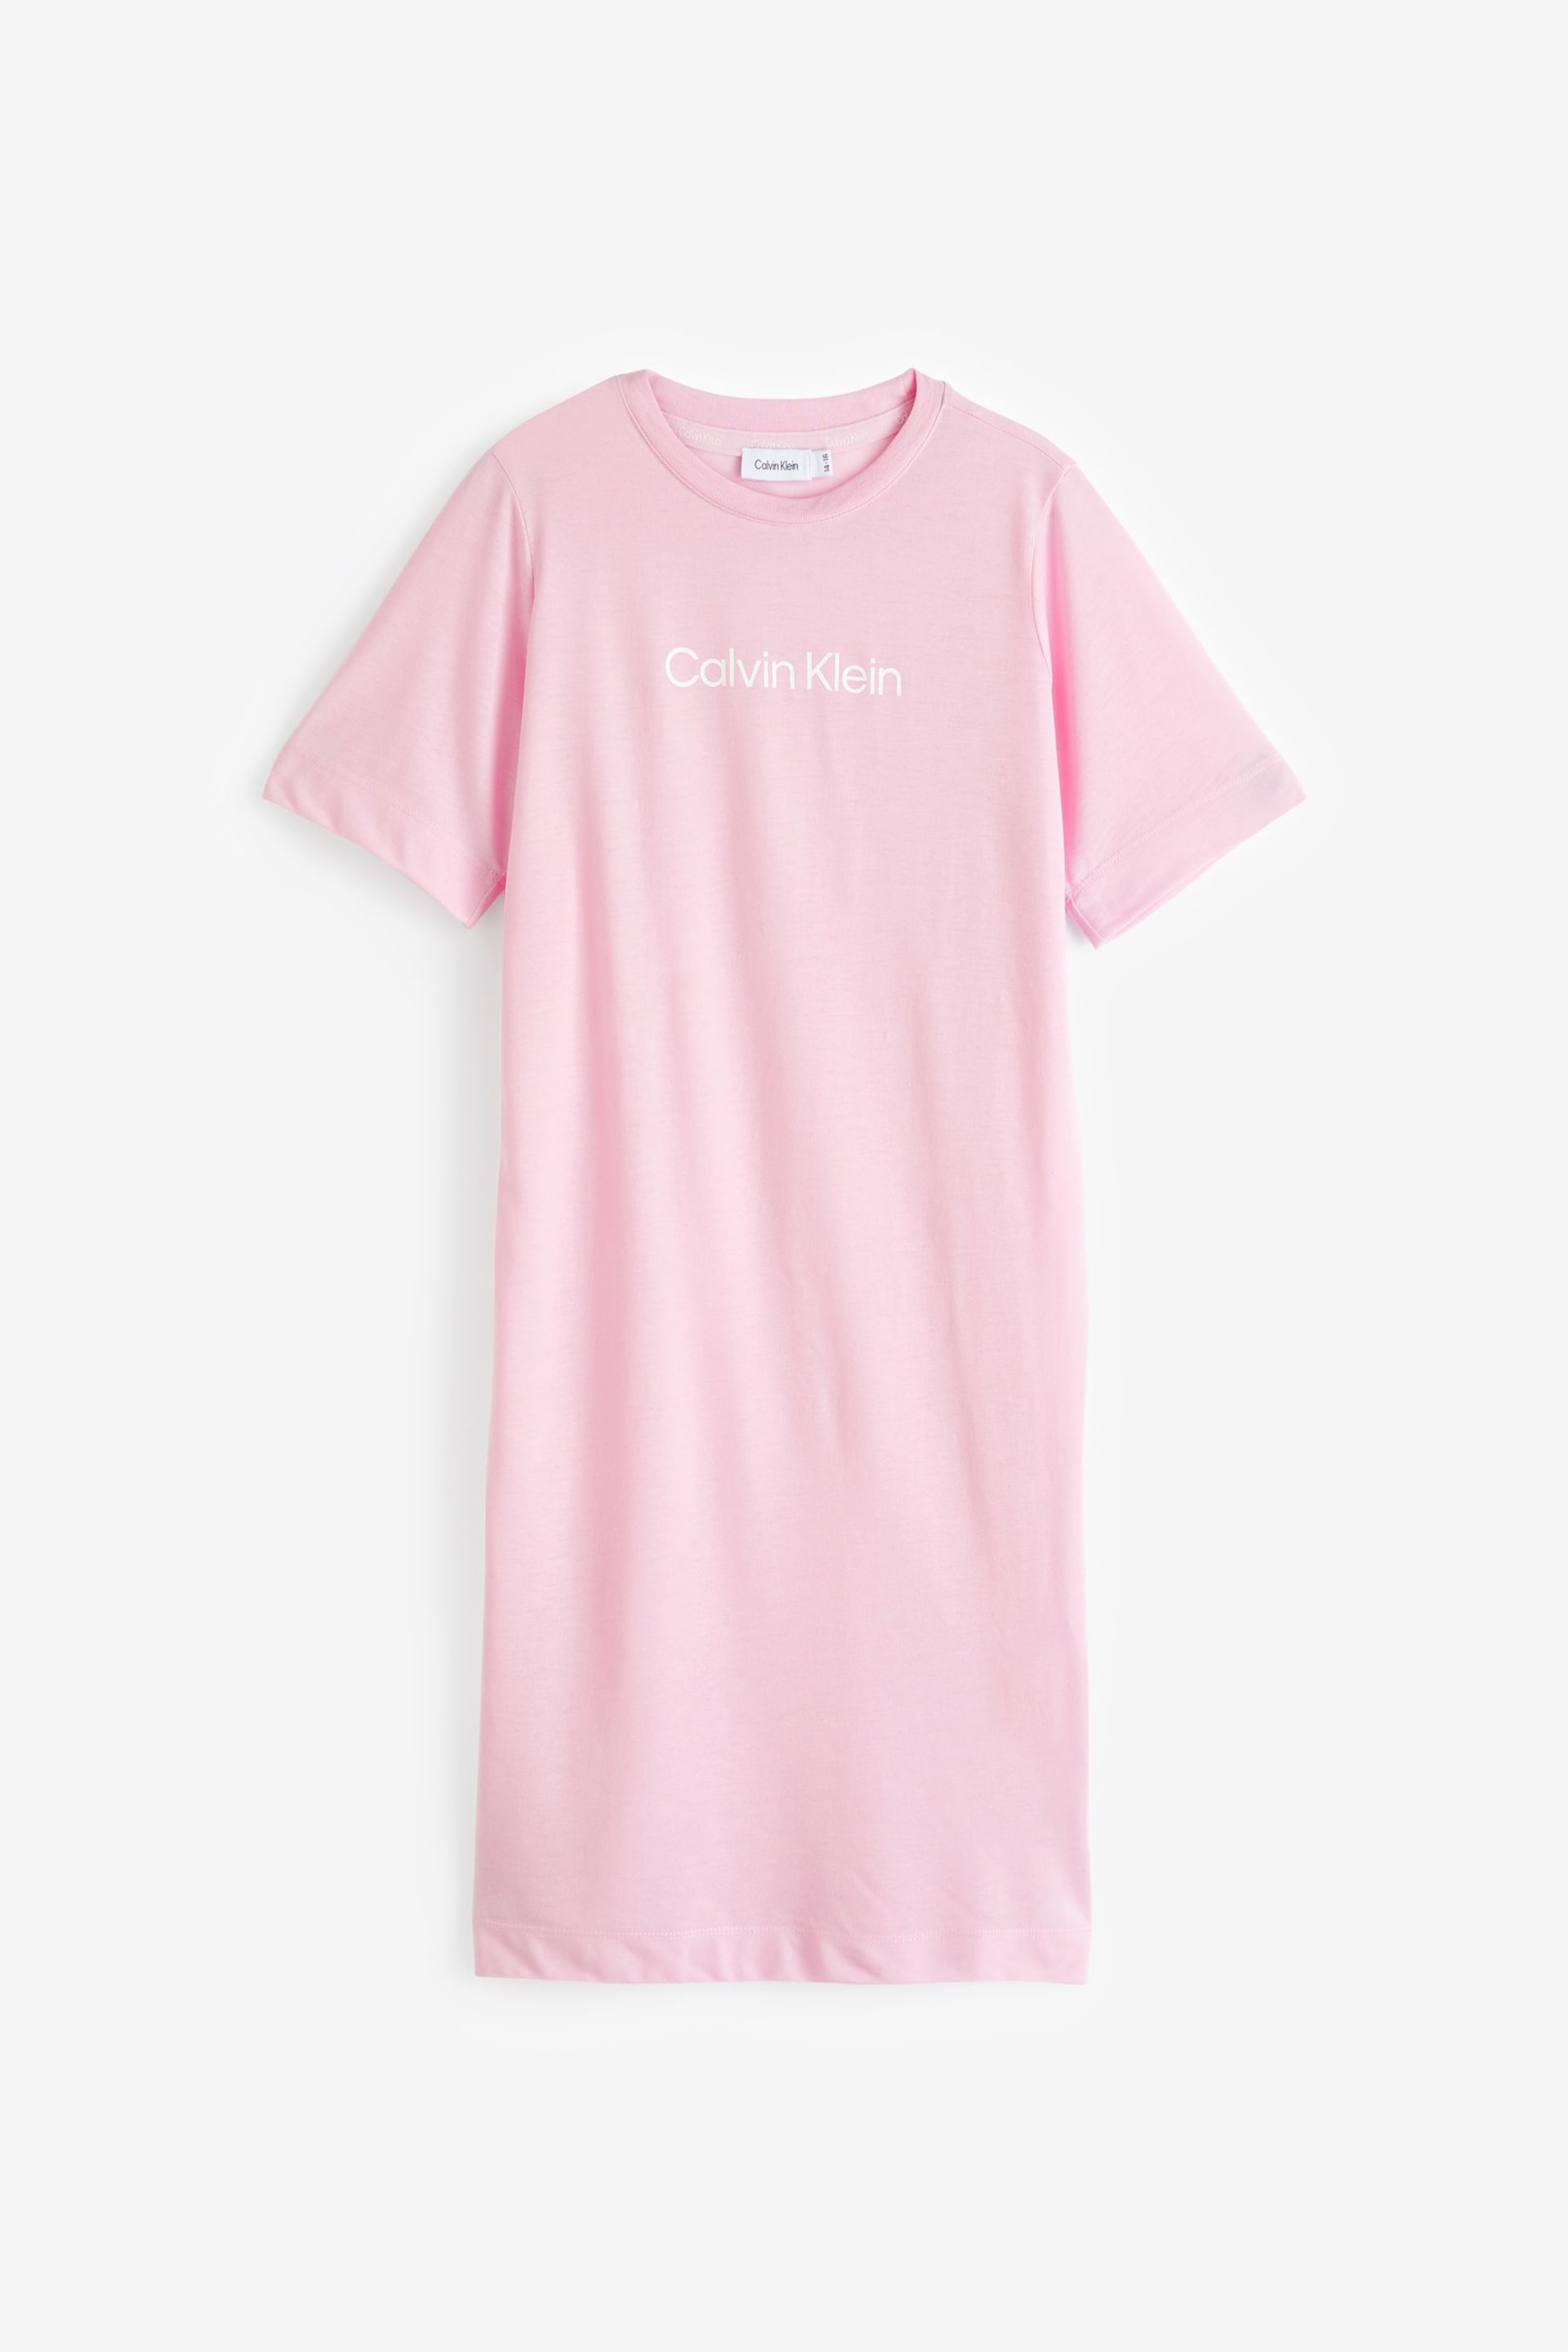 Calvin Klein Pink Slogan Nightdress - Image 1 of 1